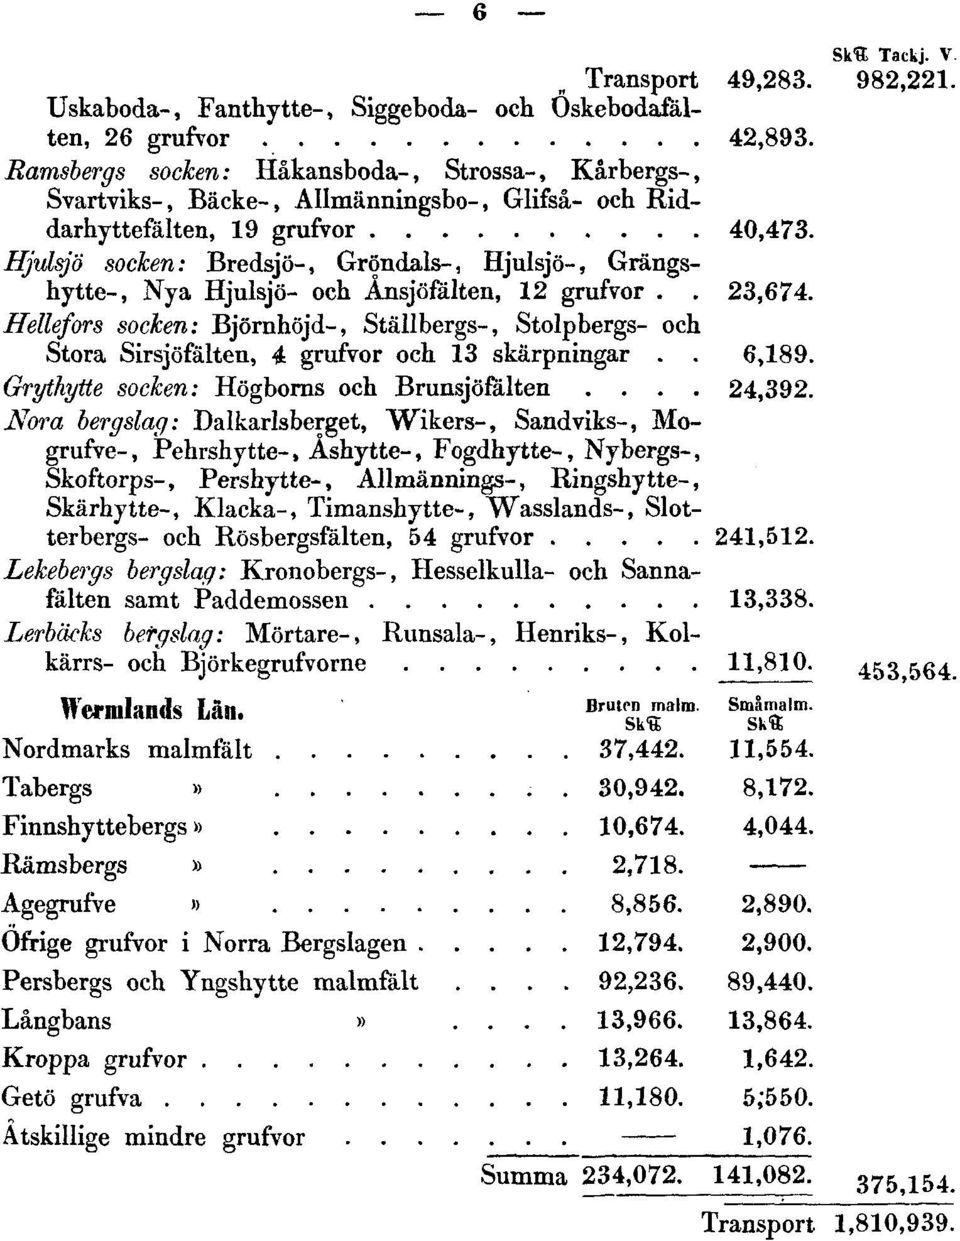 Hjulsjö socken: Bredsjö-, Gröndals-, Hjulsjö-, Grängshytte-, Nya Hjulsjö- och Ånsjöfälten, 12 grufvor.. 23,674.